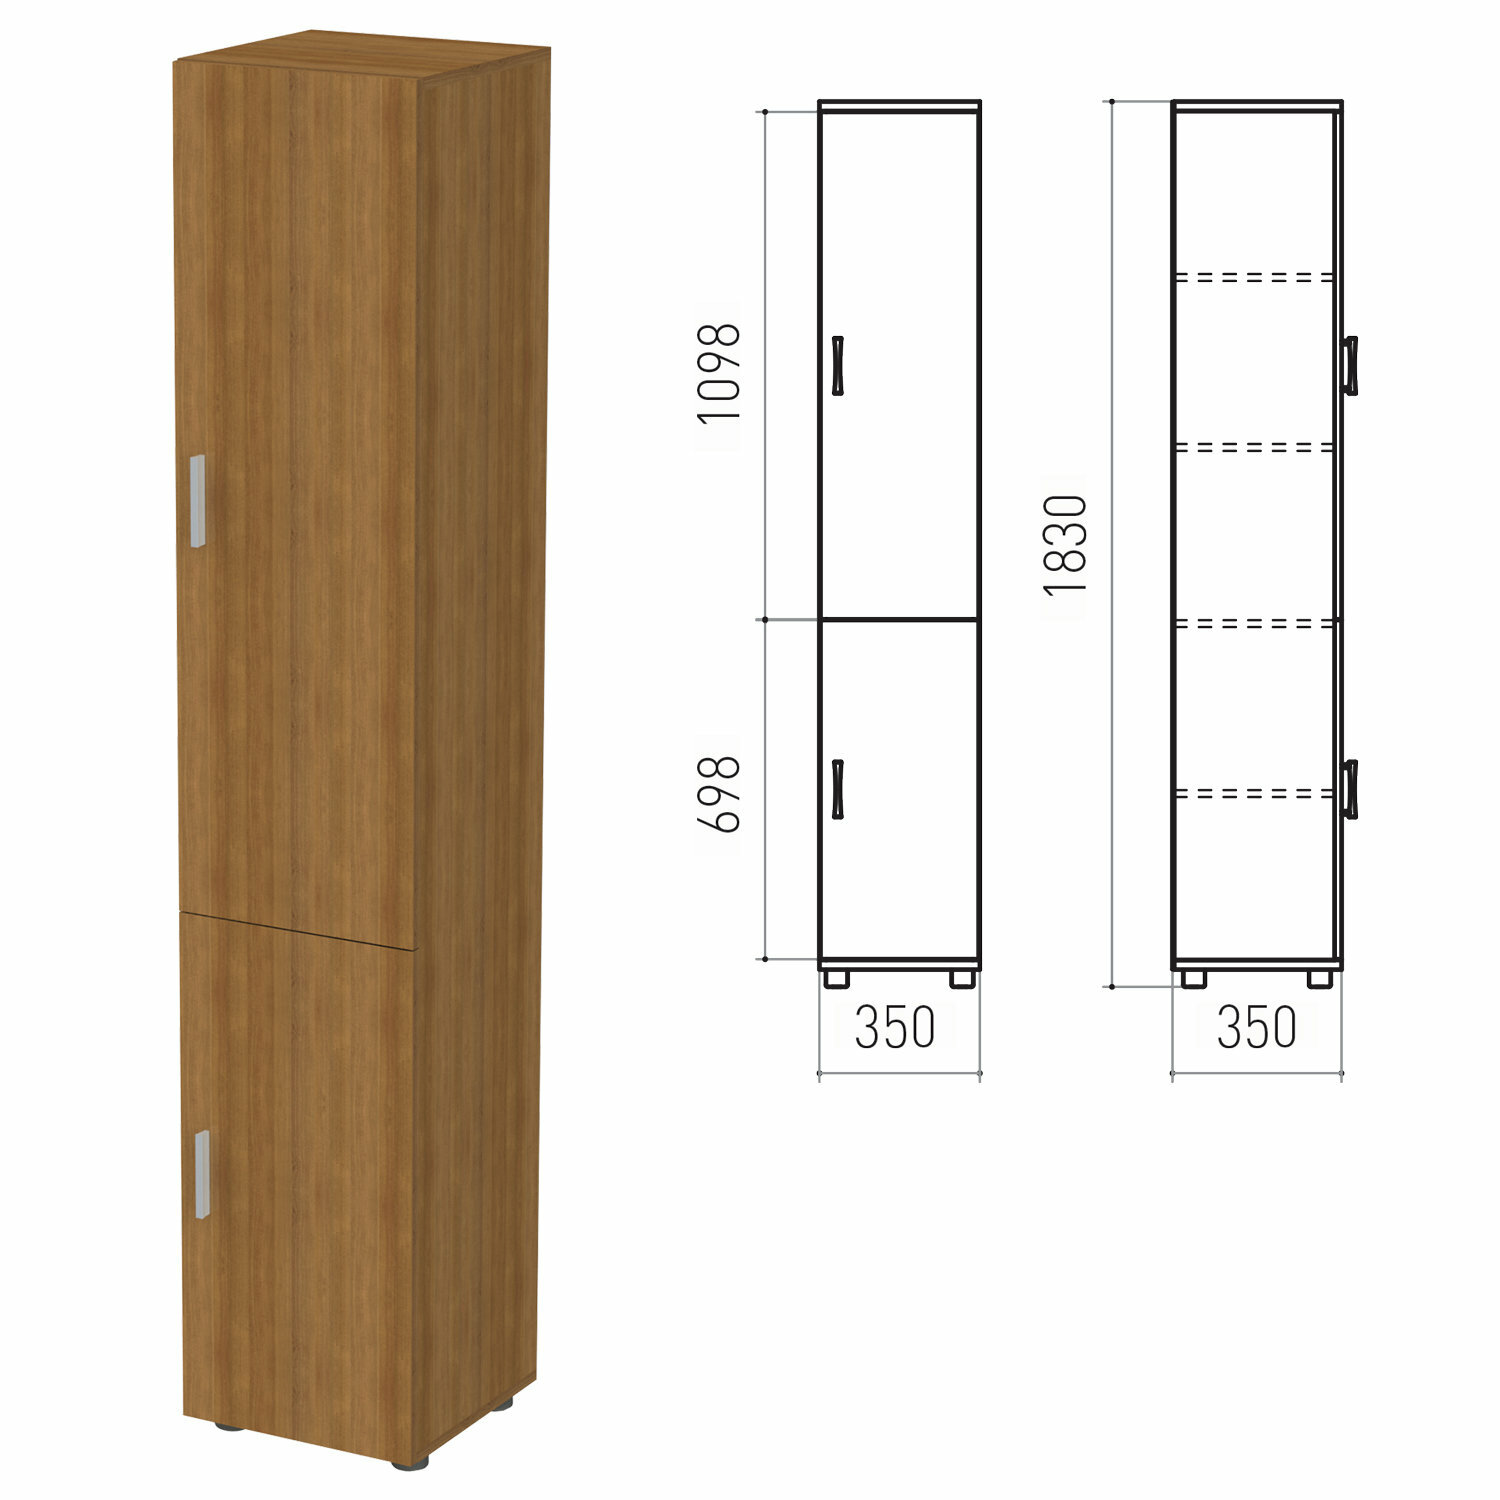 Шкаф закрытый «Канц», 350×350×1830 мм, цвет орех пирамидальный (комплект)